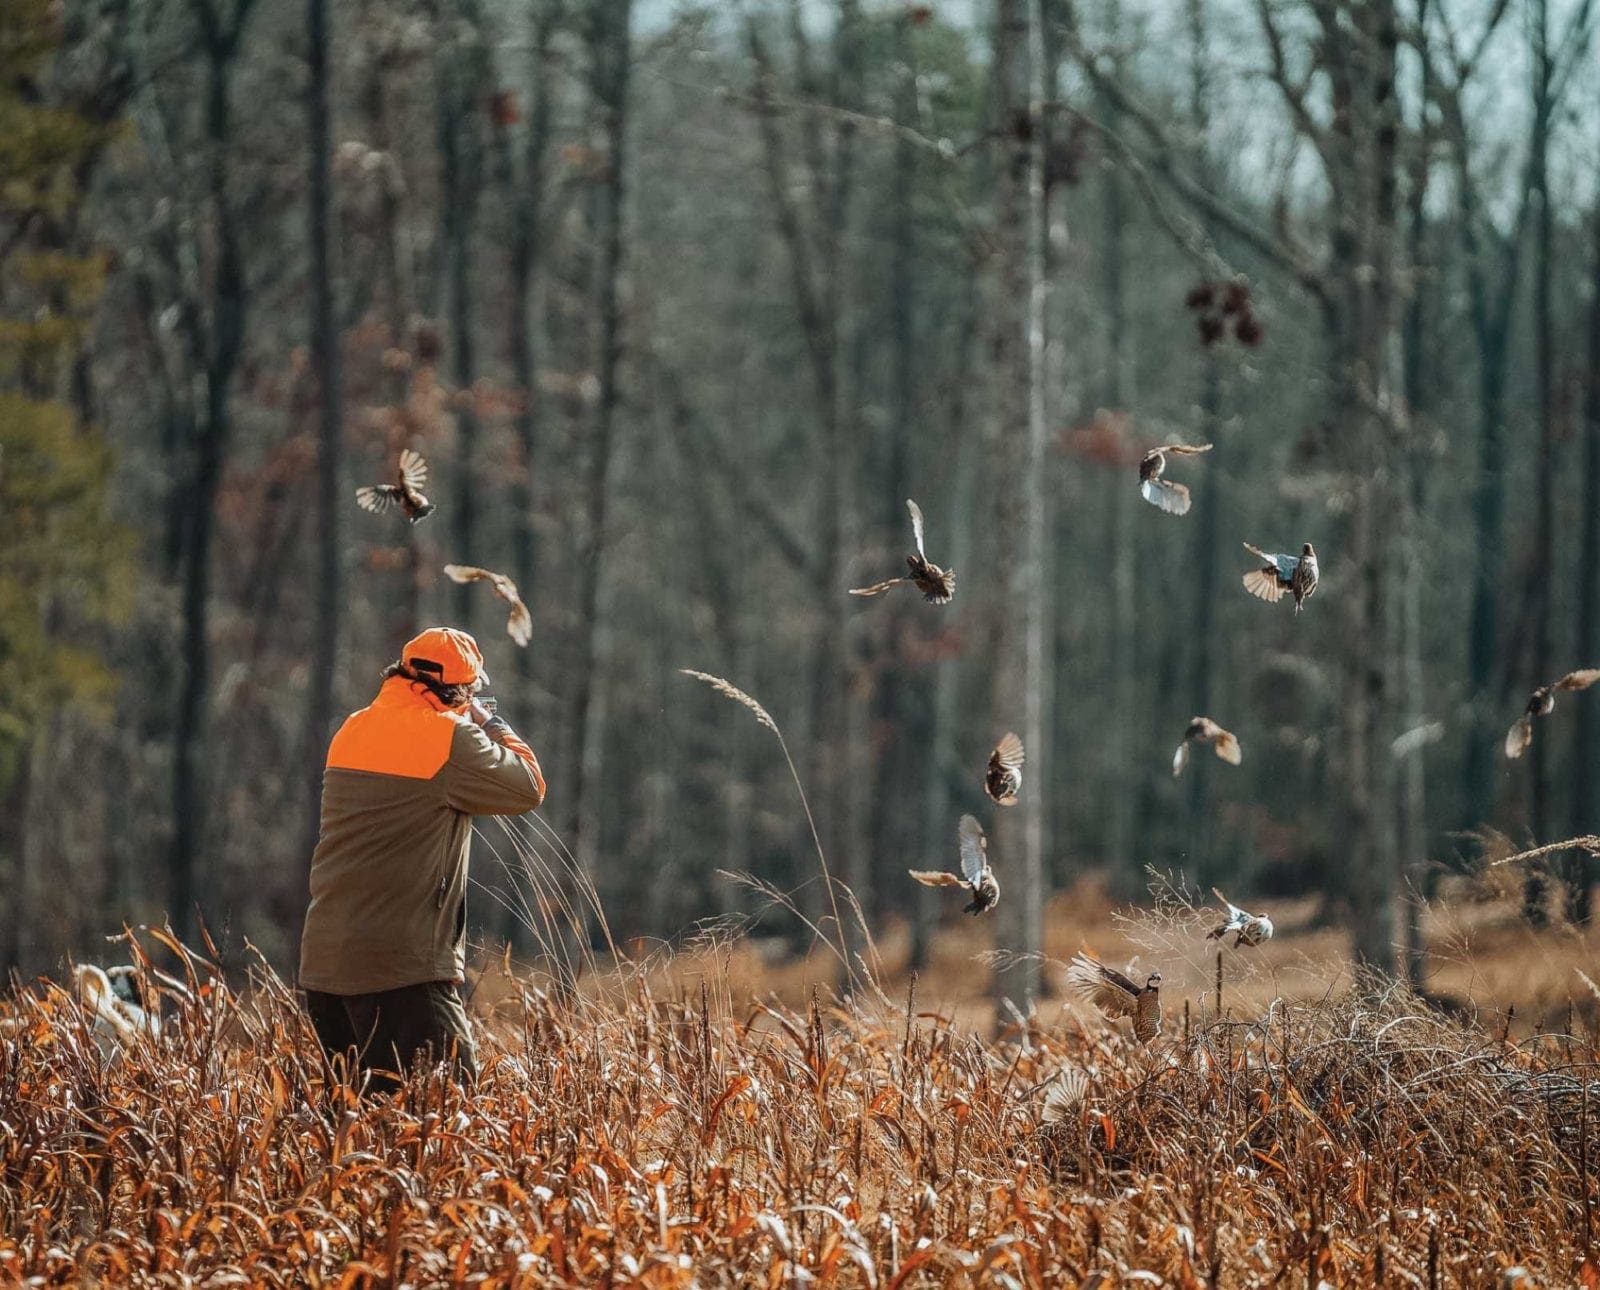 A Bobwhite Quail hunting shoots at a covey of quail.